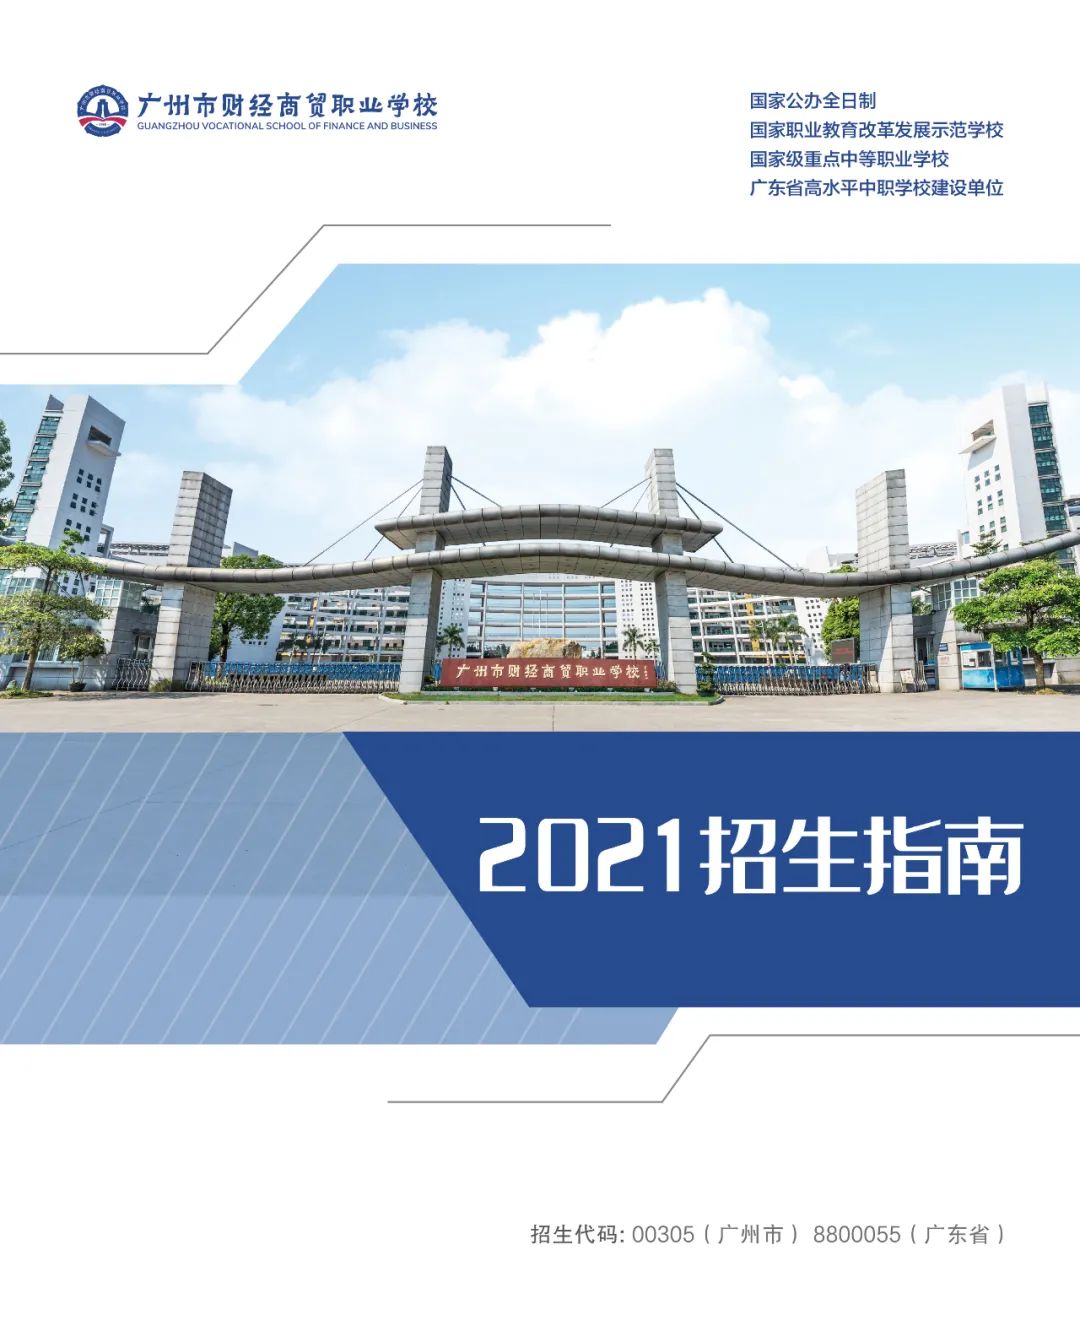 广州市财经商贸职业学校2021年招生简章